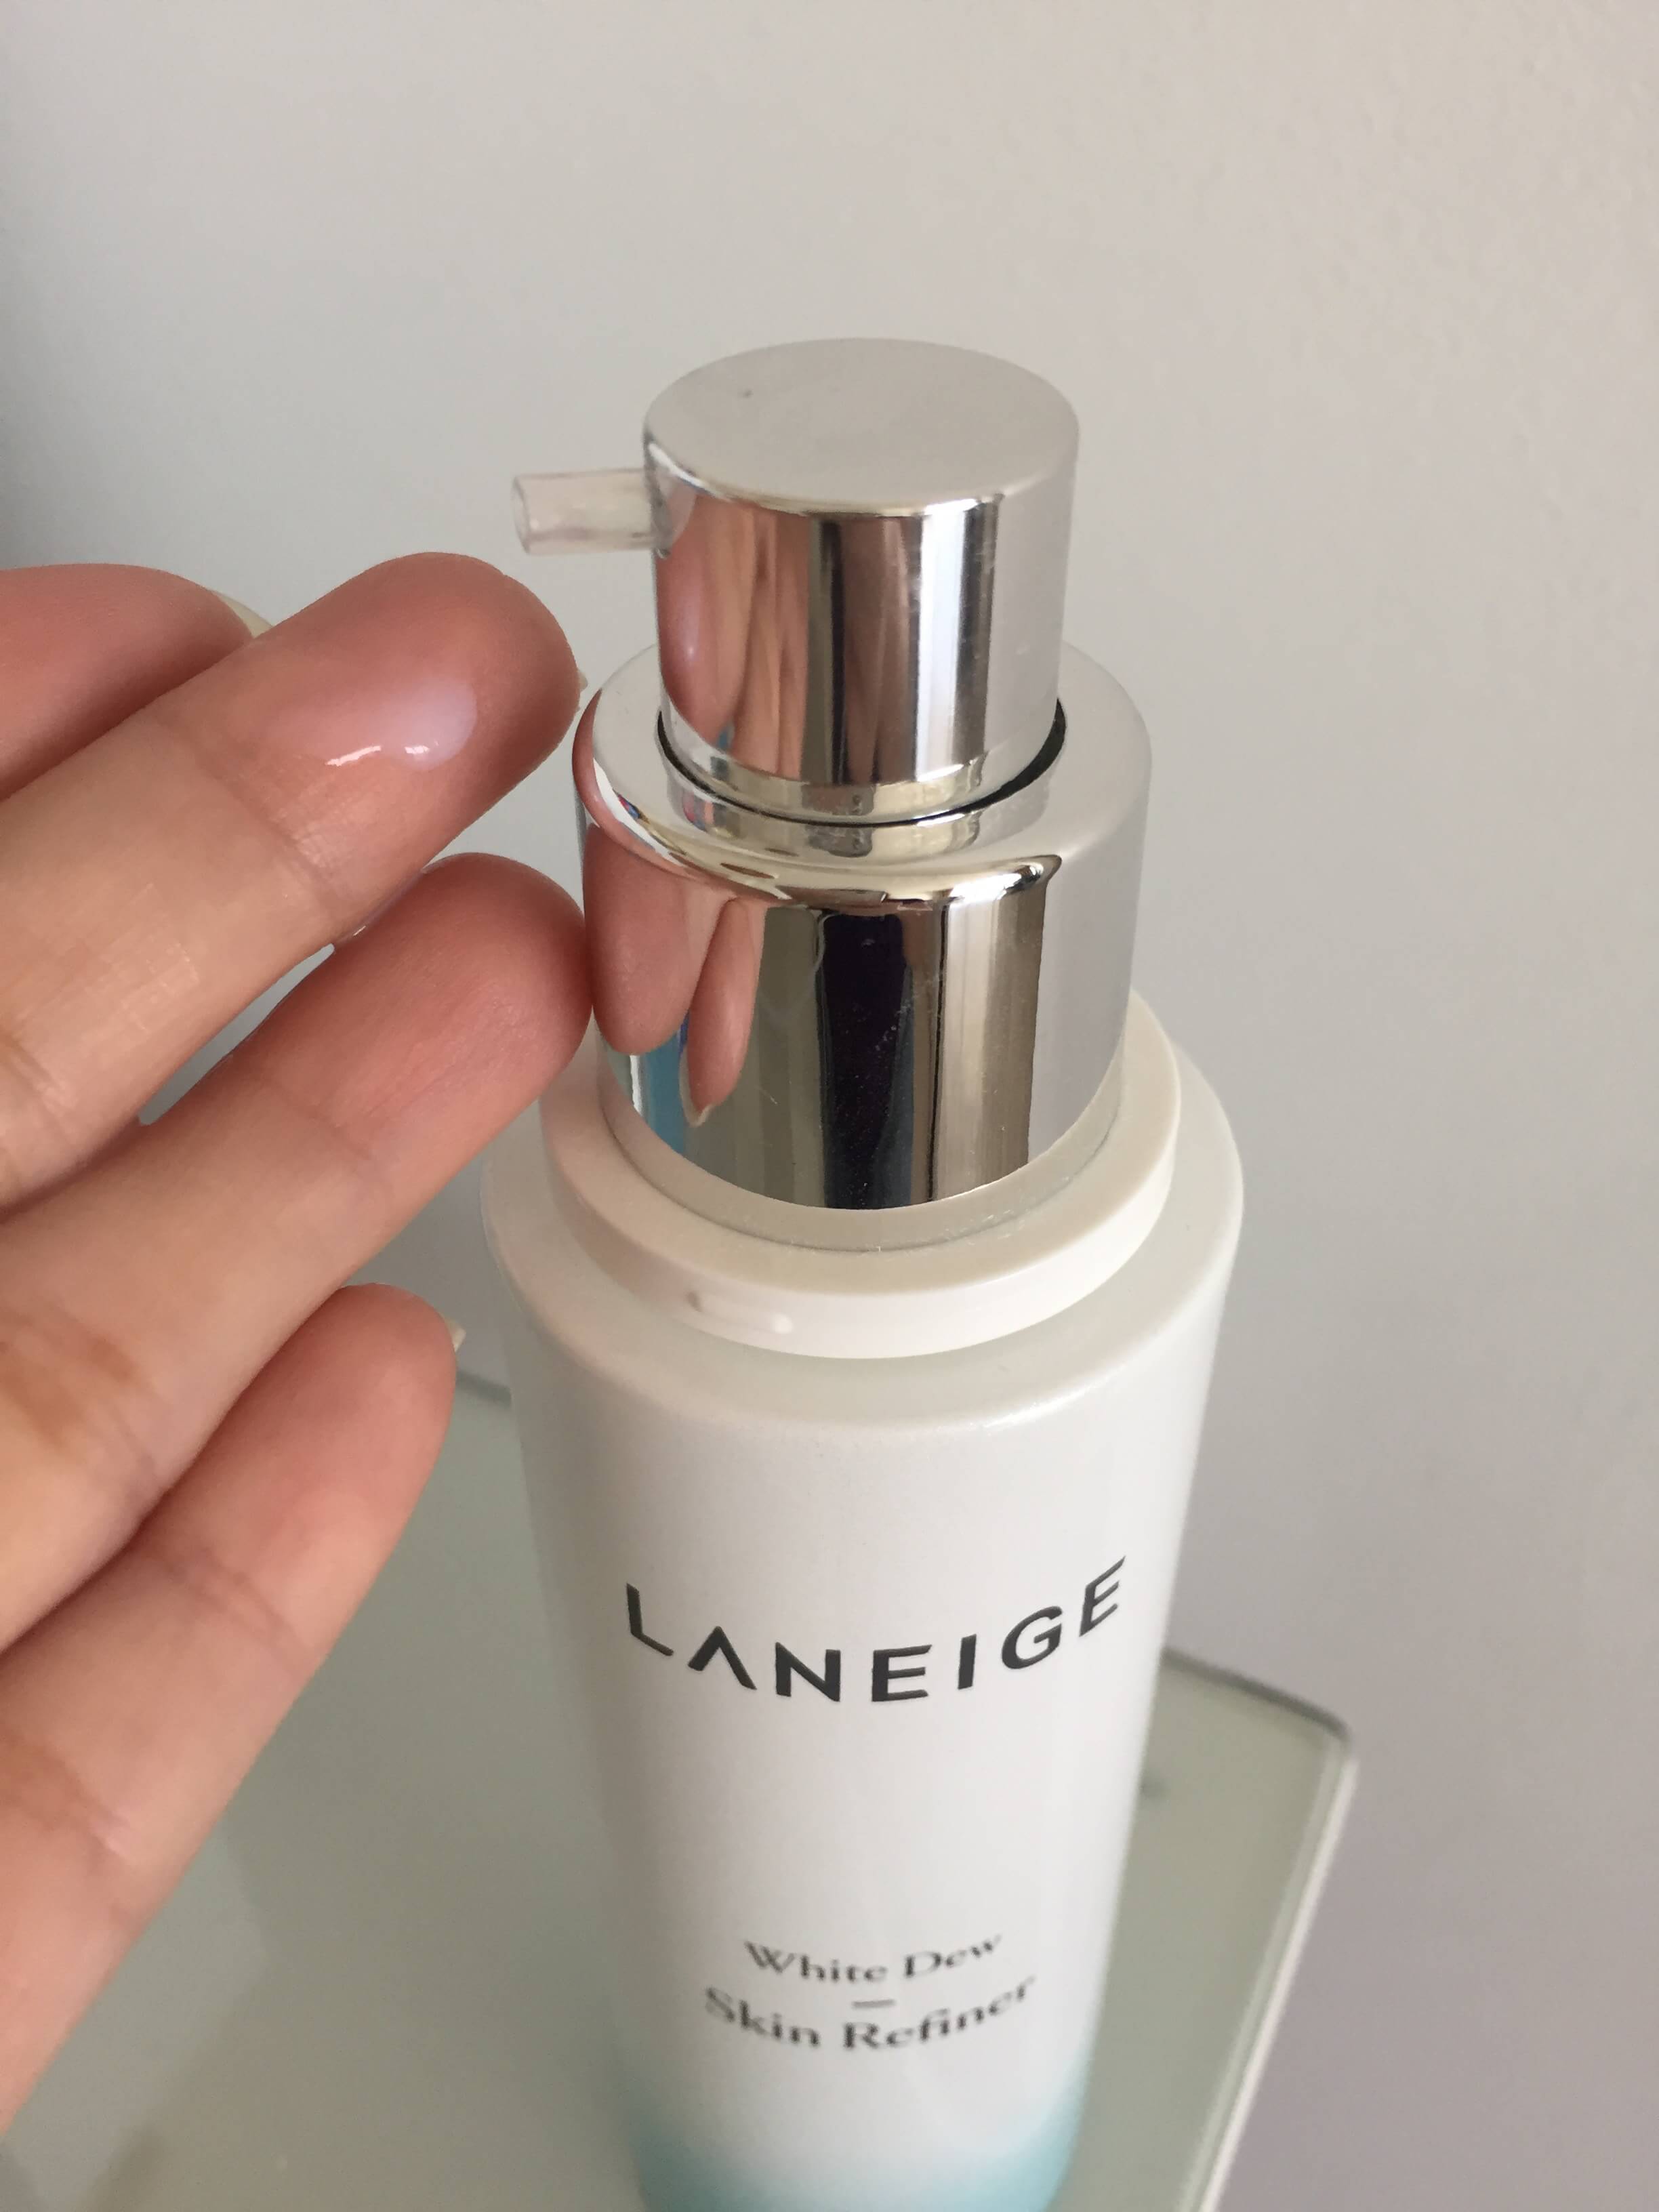 Laneige WHITE DEW Skin Refiner 120 ml.  หยดประกายสว่างใสใส่จุดด่างดำ ลดเลือนผิวหมองคล้ำ ให้เจิดจรัสดุจน้ำค้างด้วยกลุ่มผลิตภัณฑ์ LANEIGE White Dew!